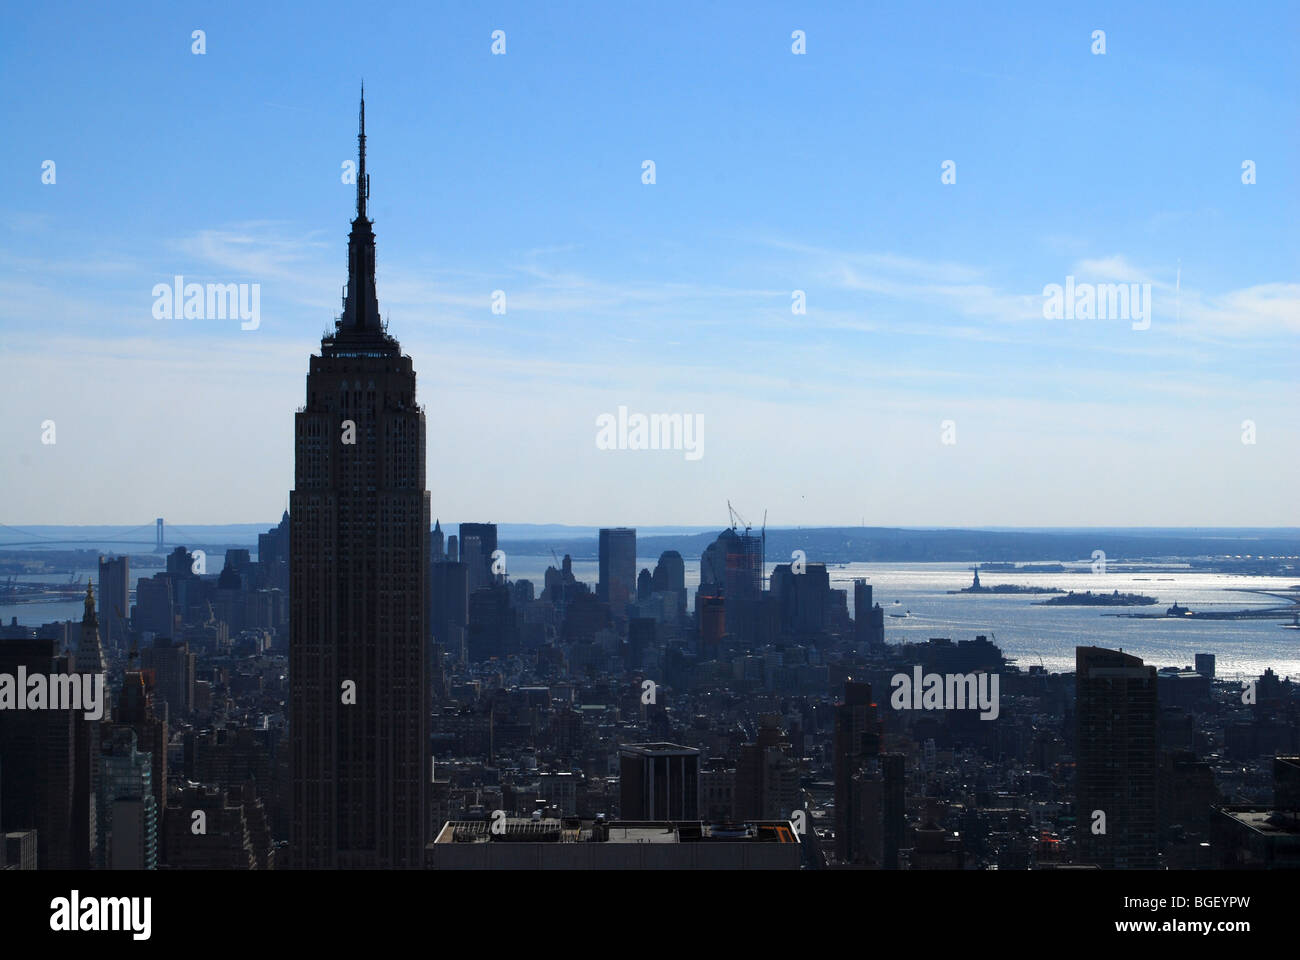 El Empire State Building y el Rockefeller Center de Manhattan desde la plataforma de observación. La Ciudad de Nueva York, EE.UU. Foto de stock